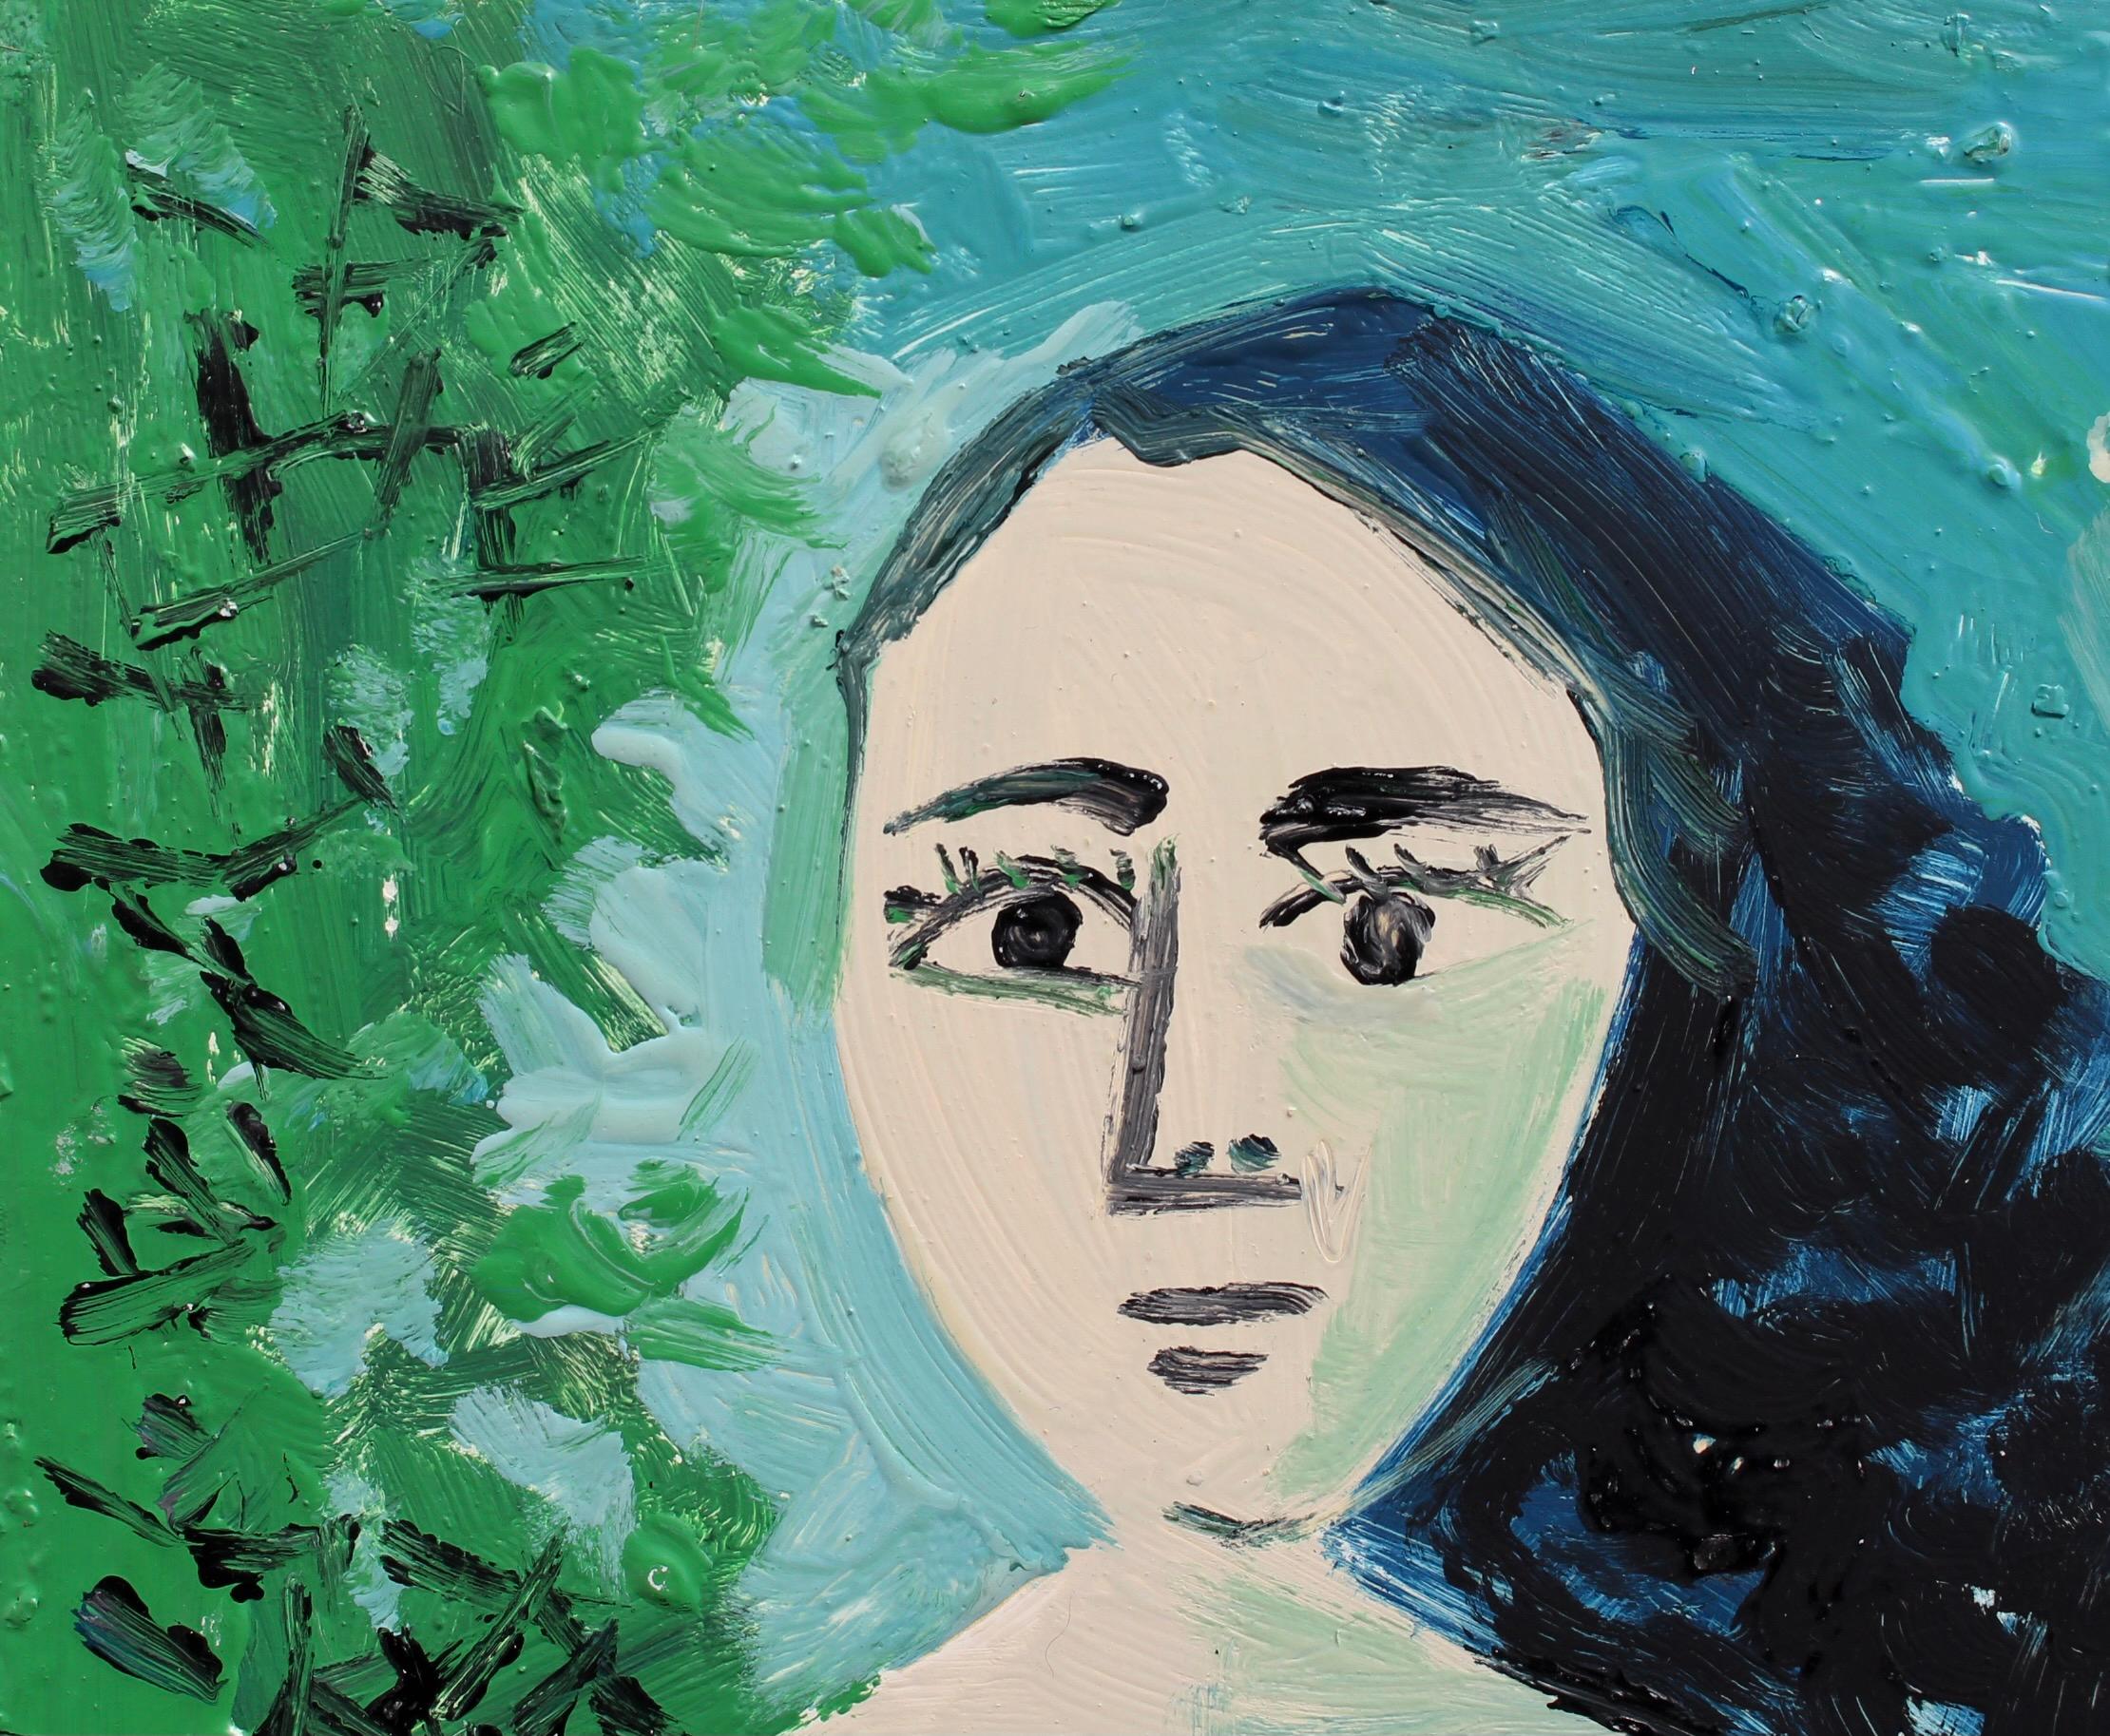 Portrait of Woman in the Garden - Blue Portrait Painting by Raymond Debieve